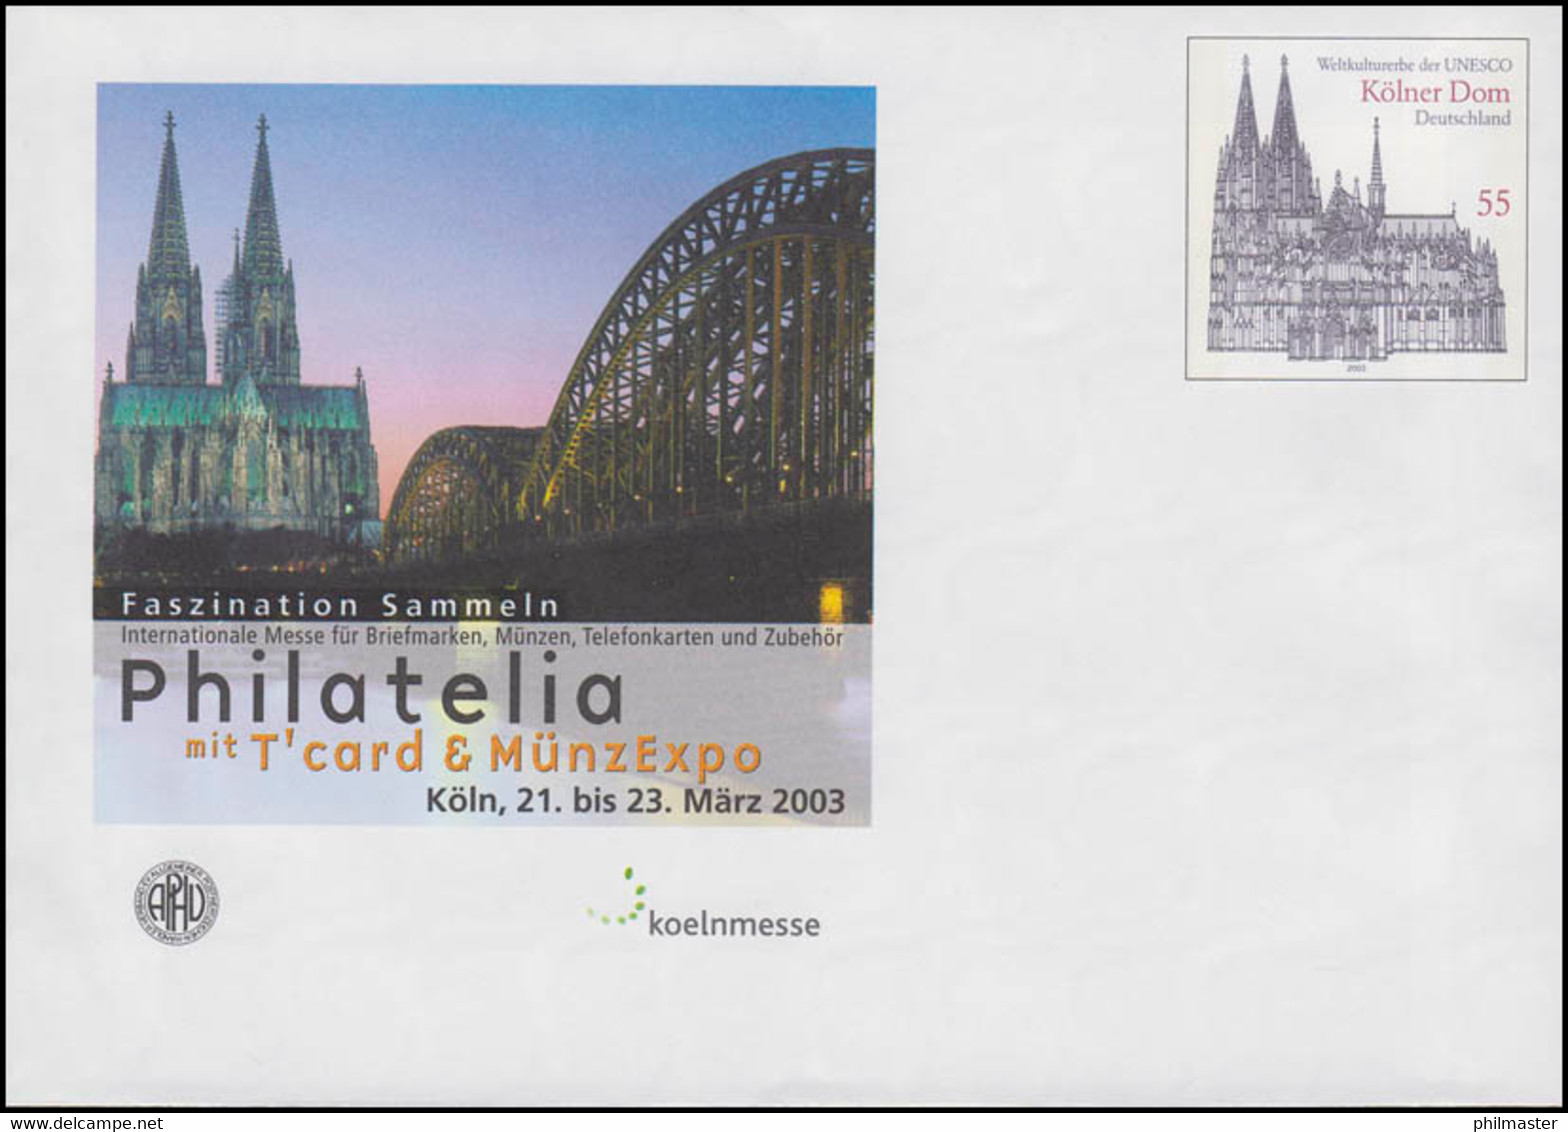 USo 55 PHILATELIA Köln 2003 Und UNESCO Kölner Dom, ** - Covers - Mint